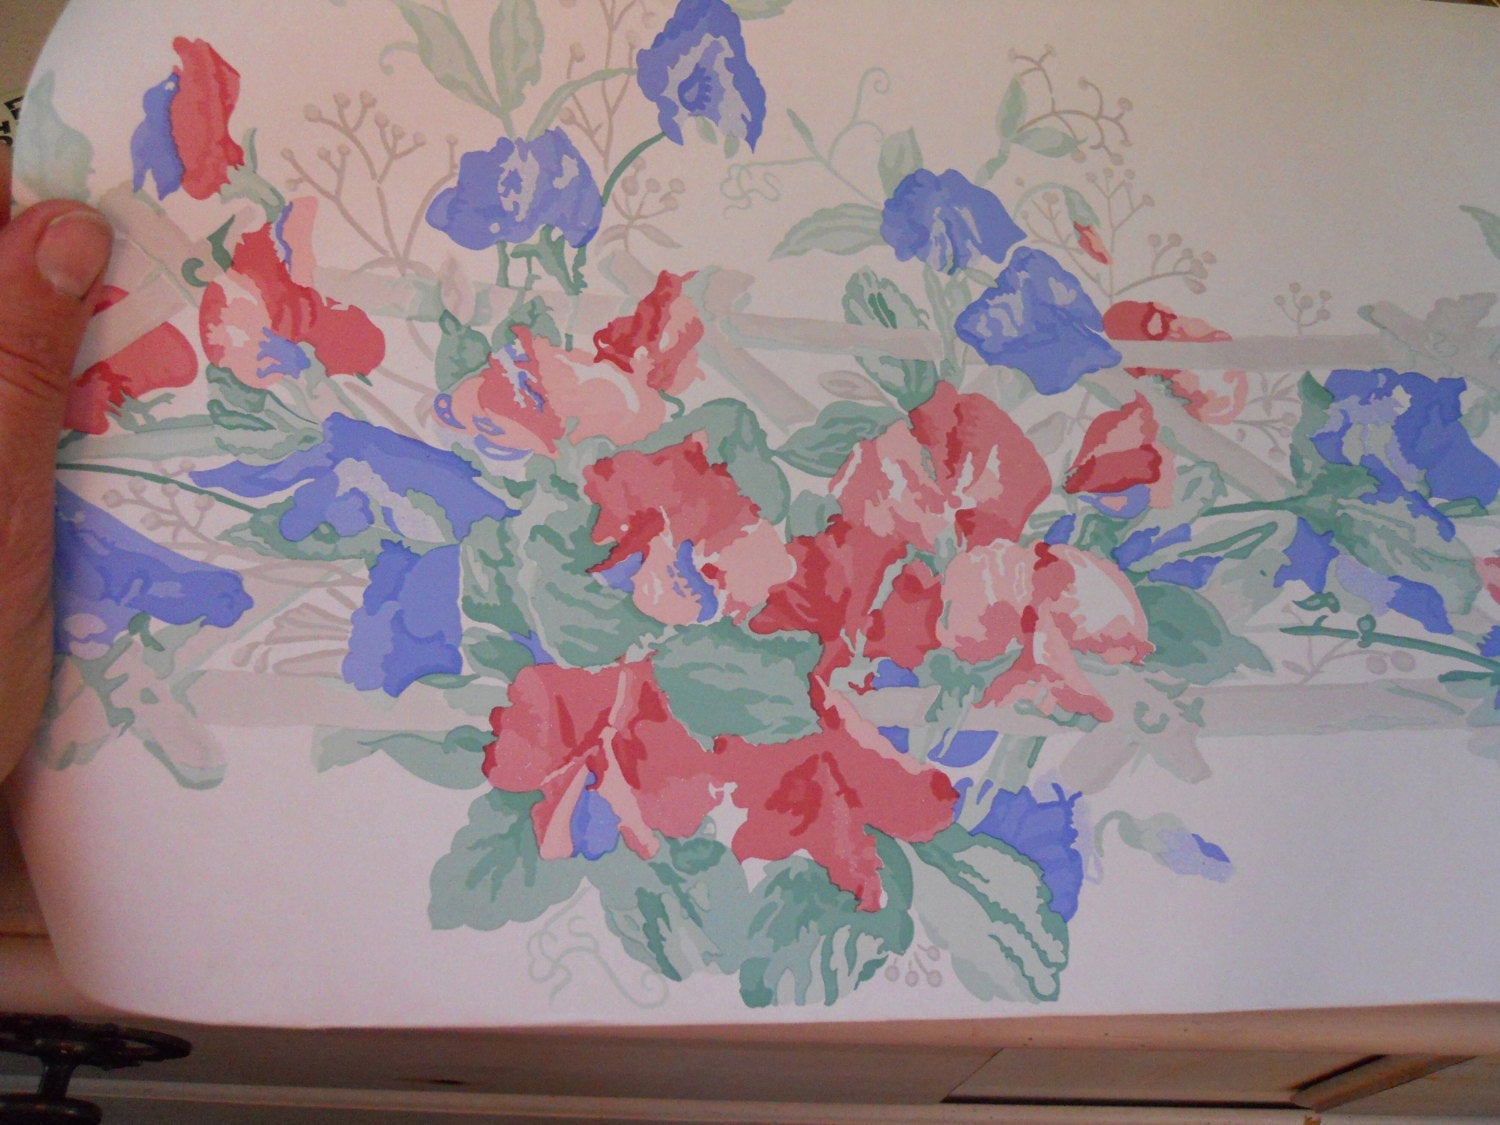 laura ashley wallpaper borders,painting,watercolor paint,textile,plant,flower